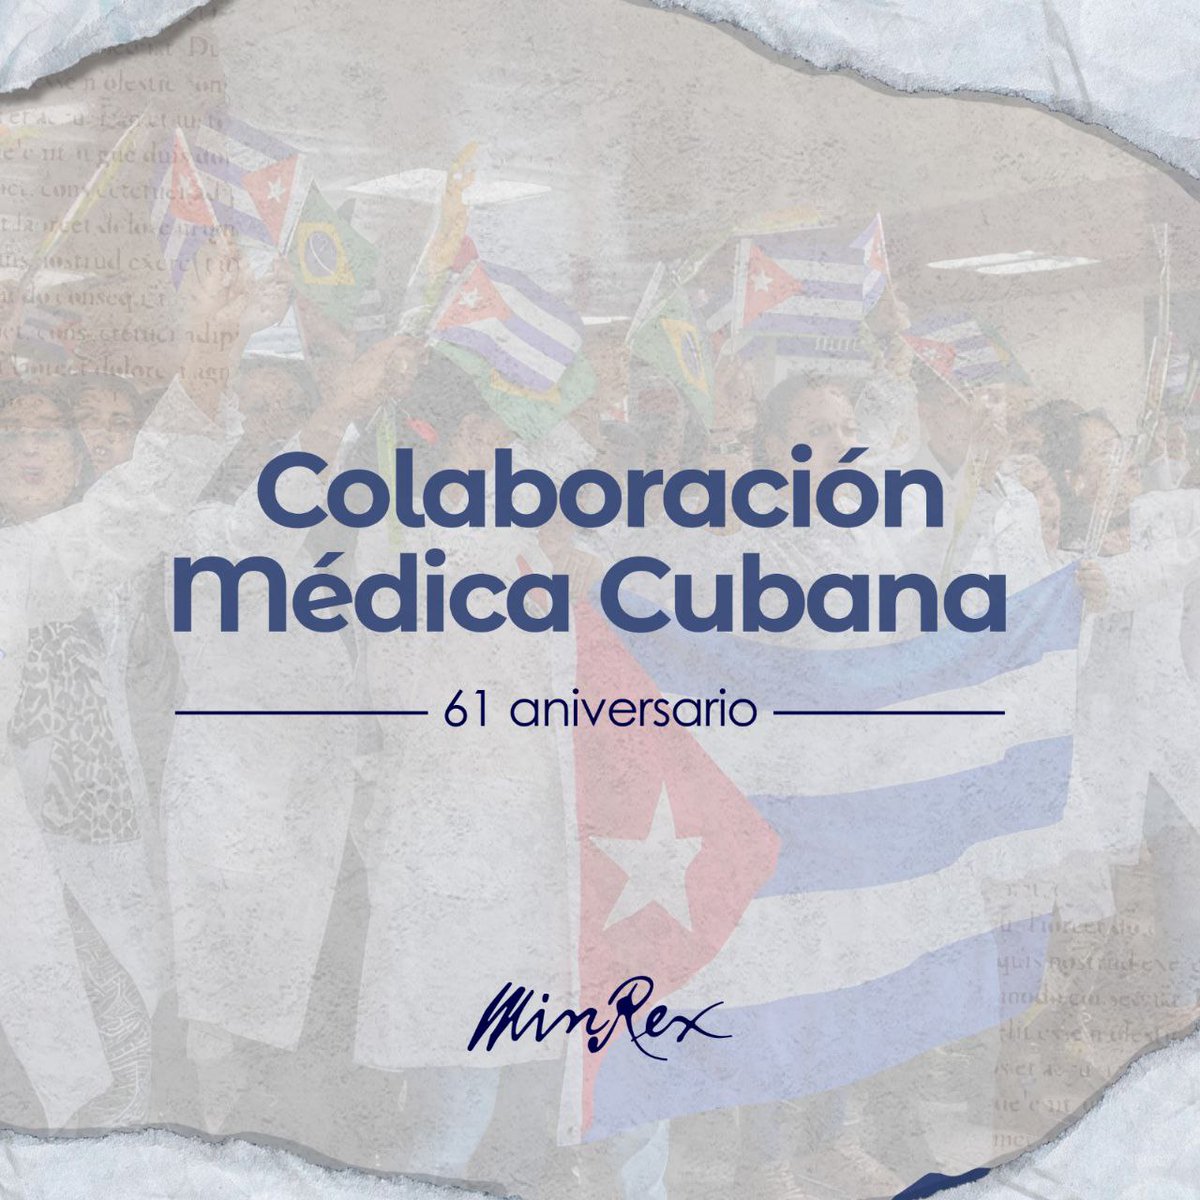 🔴 Hoy se cumplen 61 años del envío de la primera brigada 🧑‍⚕️👨‍⚕️🇨🇺 de colaboración médica cubana a Argelia, por iniciativa del Comandante Fidel Castro Ruz.